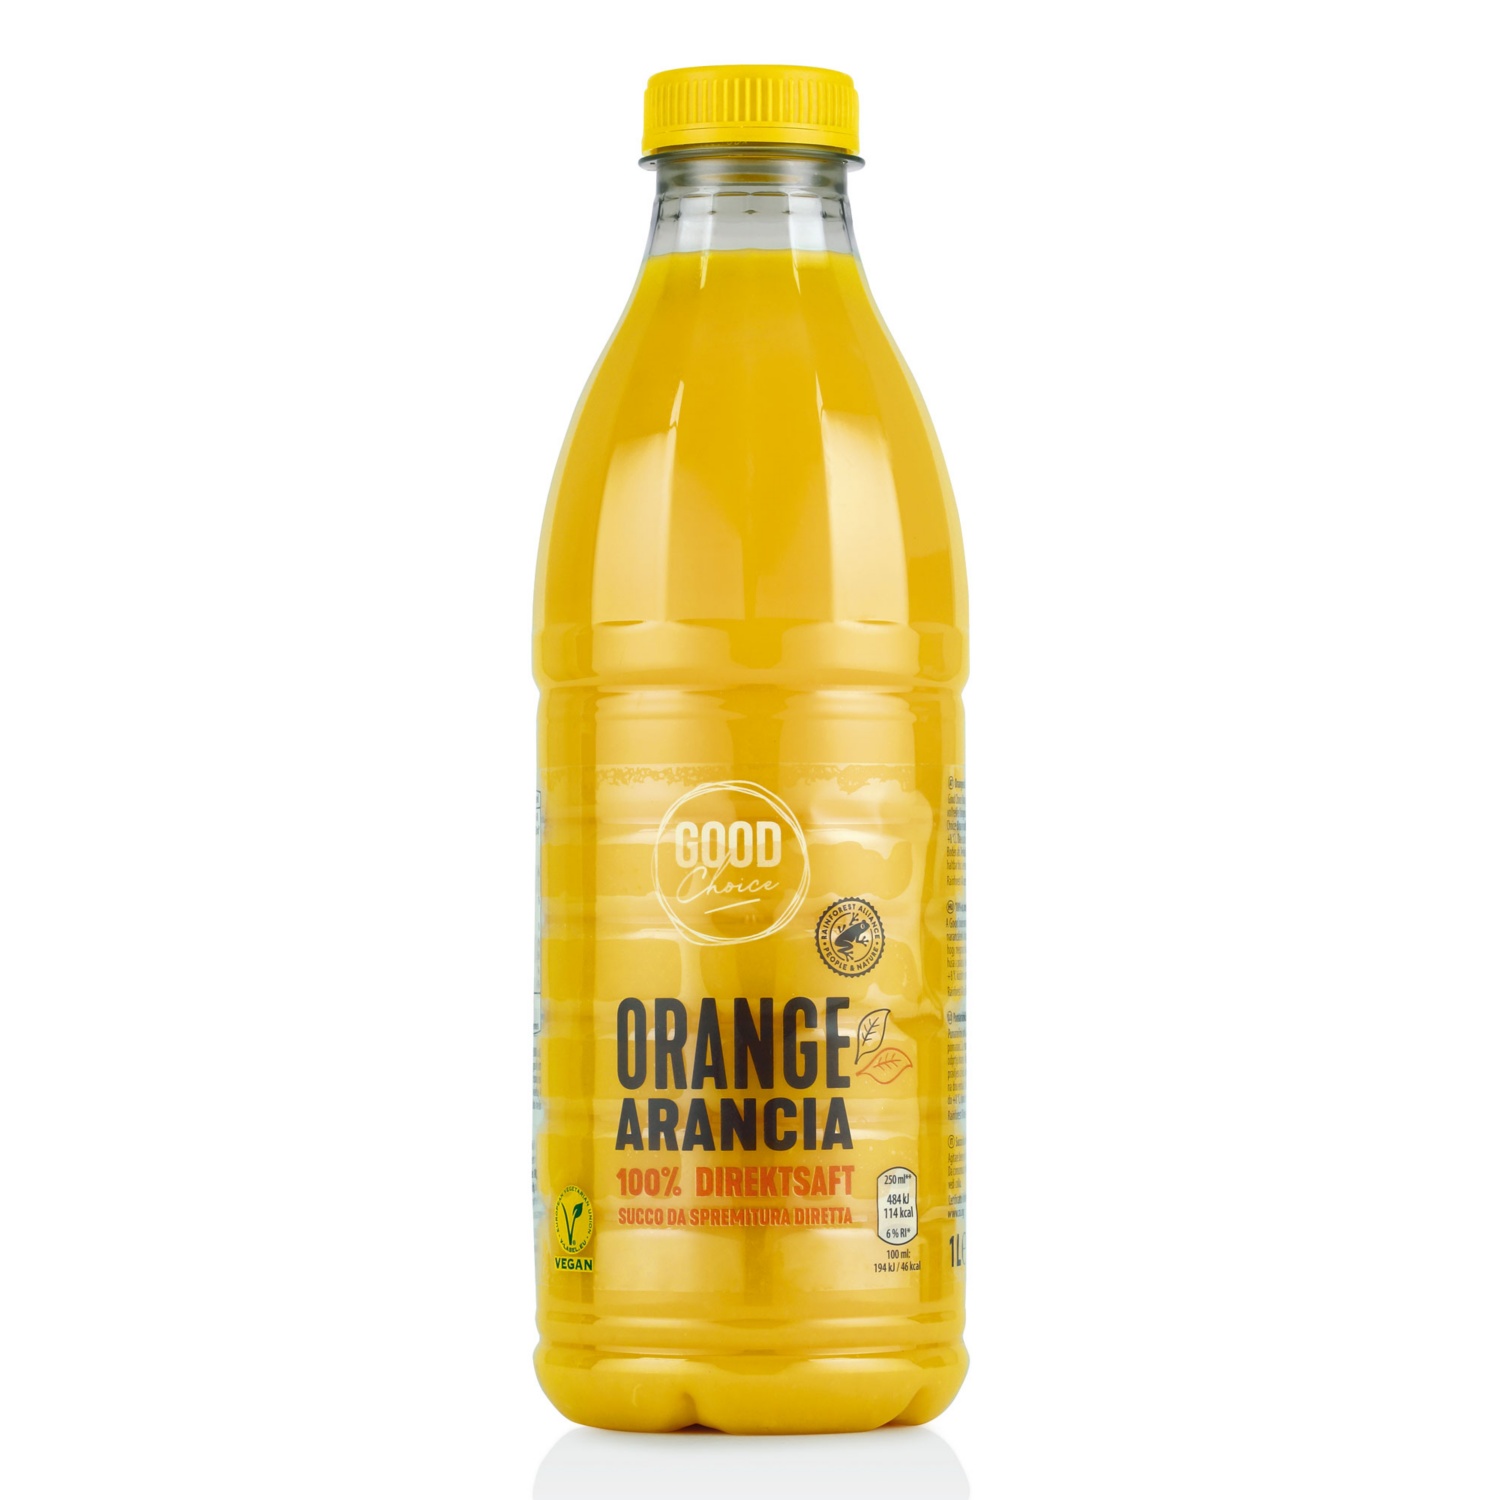 GOOD CHOICE Direktsaft Orange